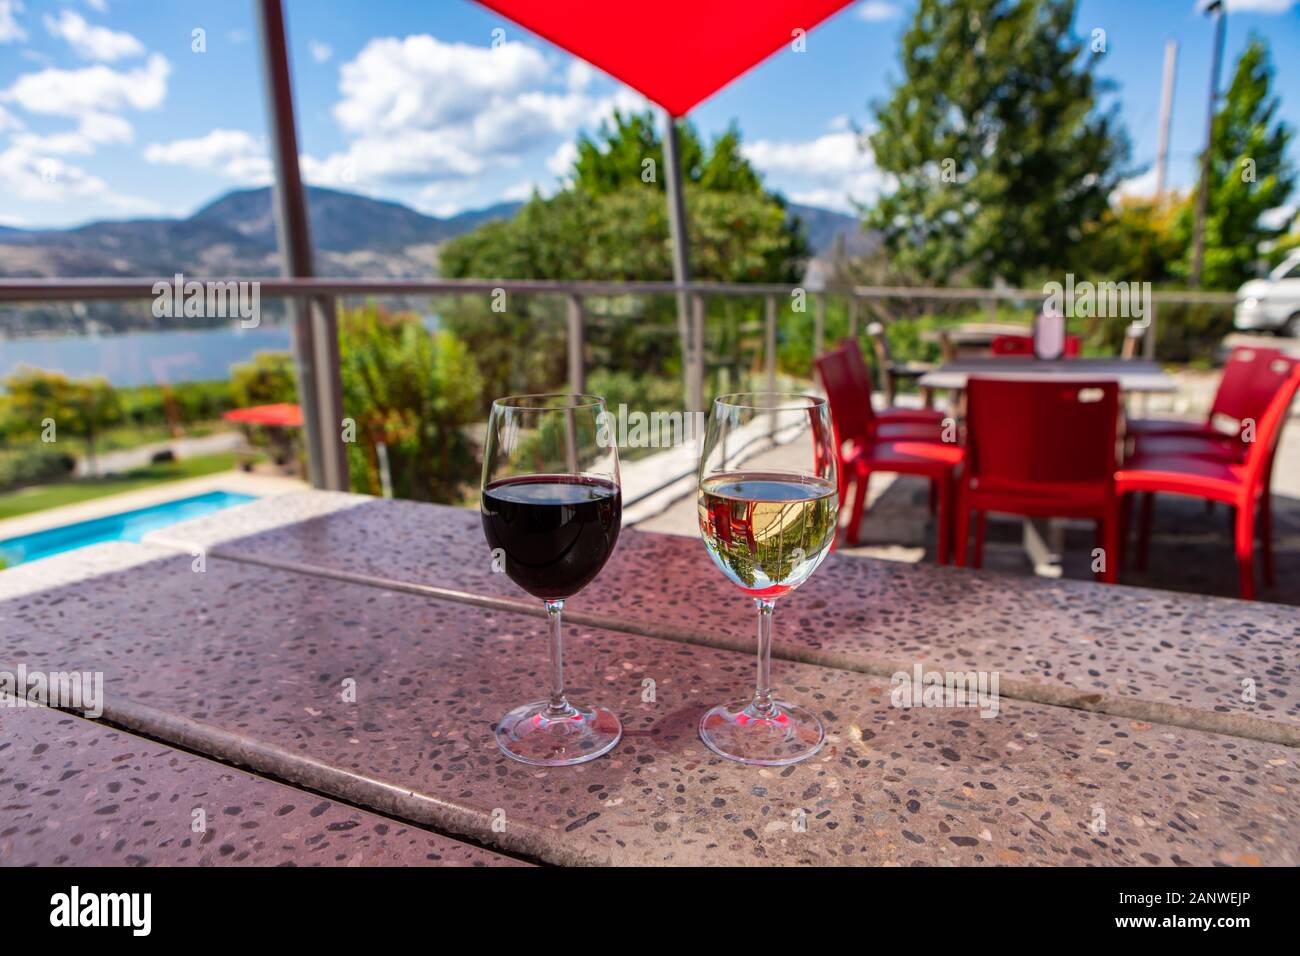 Vin rouge et vin blanc verres selective focus, sur table en terrazzo restaurant patio, salle de dégustation cave terrasse avec vue sur le lac Okanagan Banque D'Images